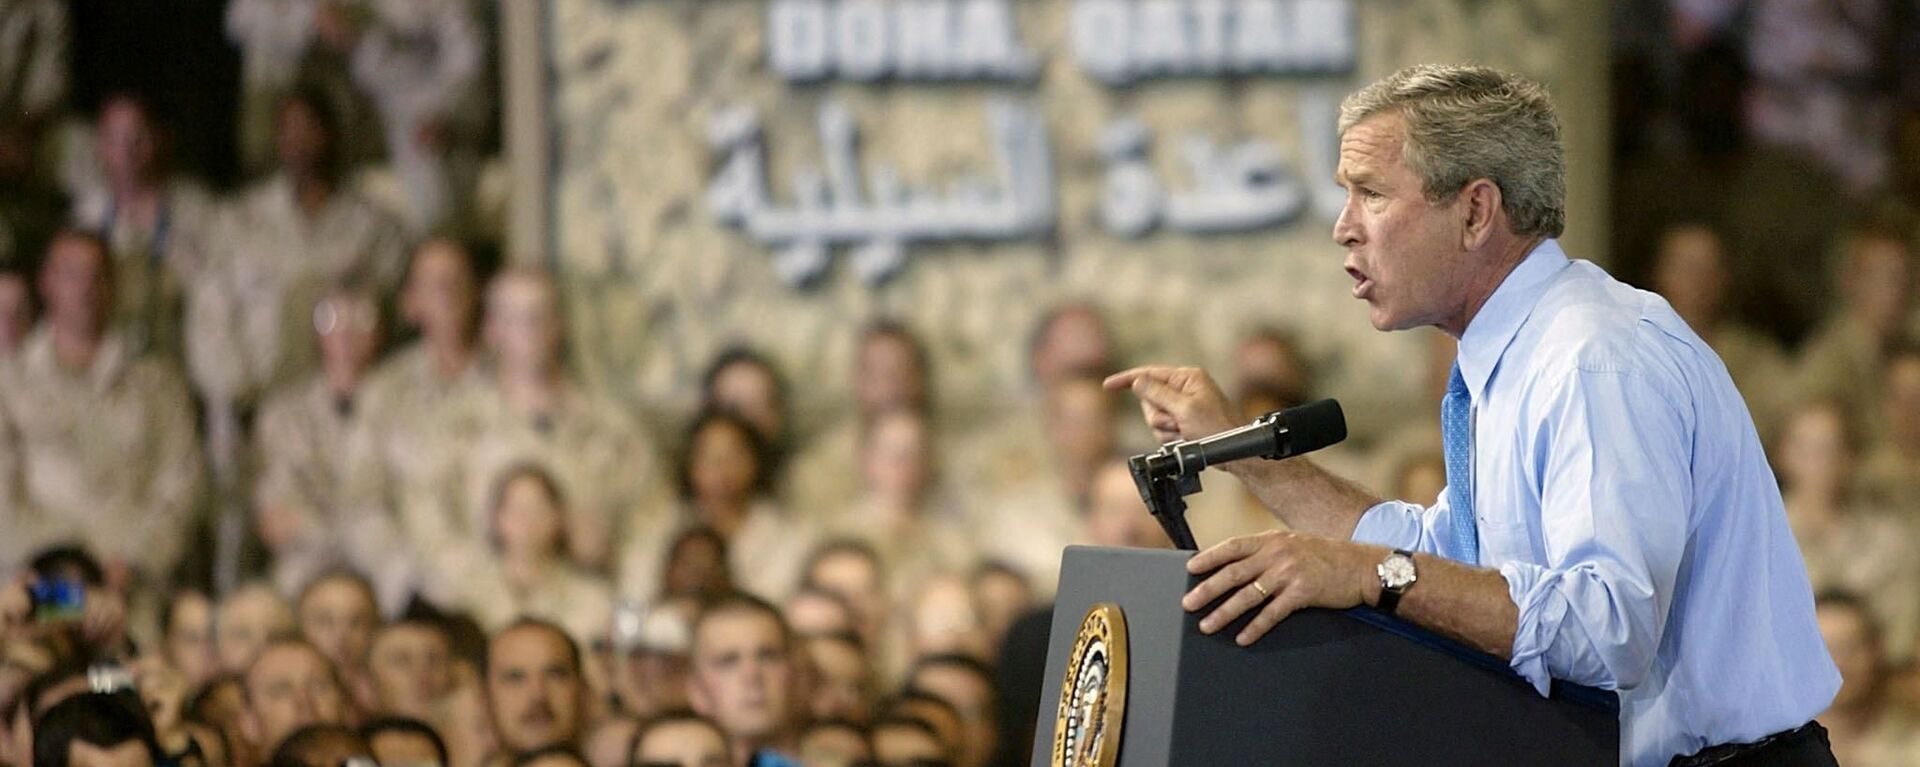 الرئيس الأمريكي الأسبق جورج دبليو بوش خلال زيارة لمعسكر السيلية في قطر عام 2003 خلال حرب العراق - سبوتنيك عربي, 1920, 18.08.2021